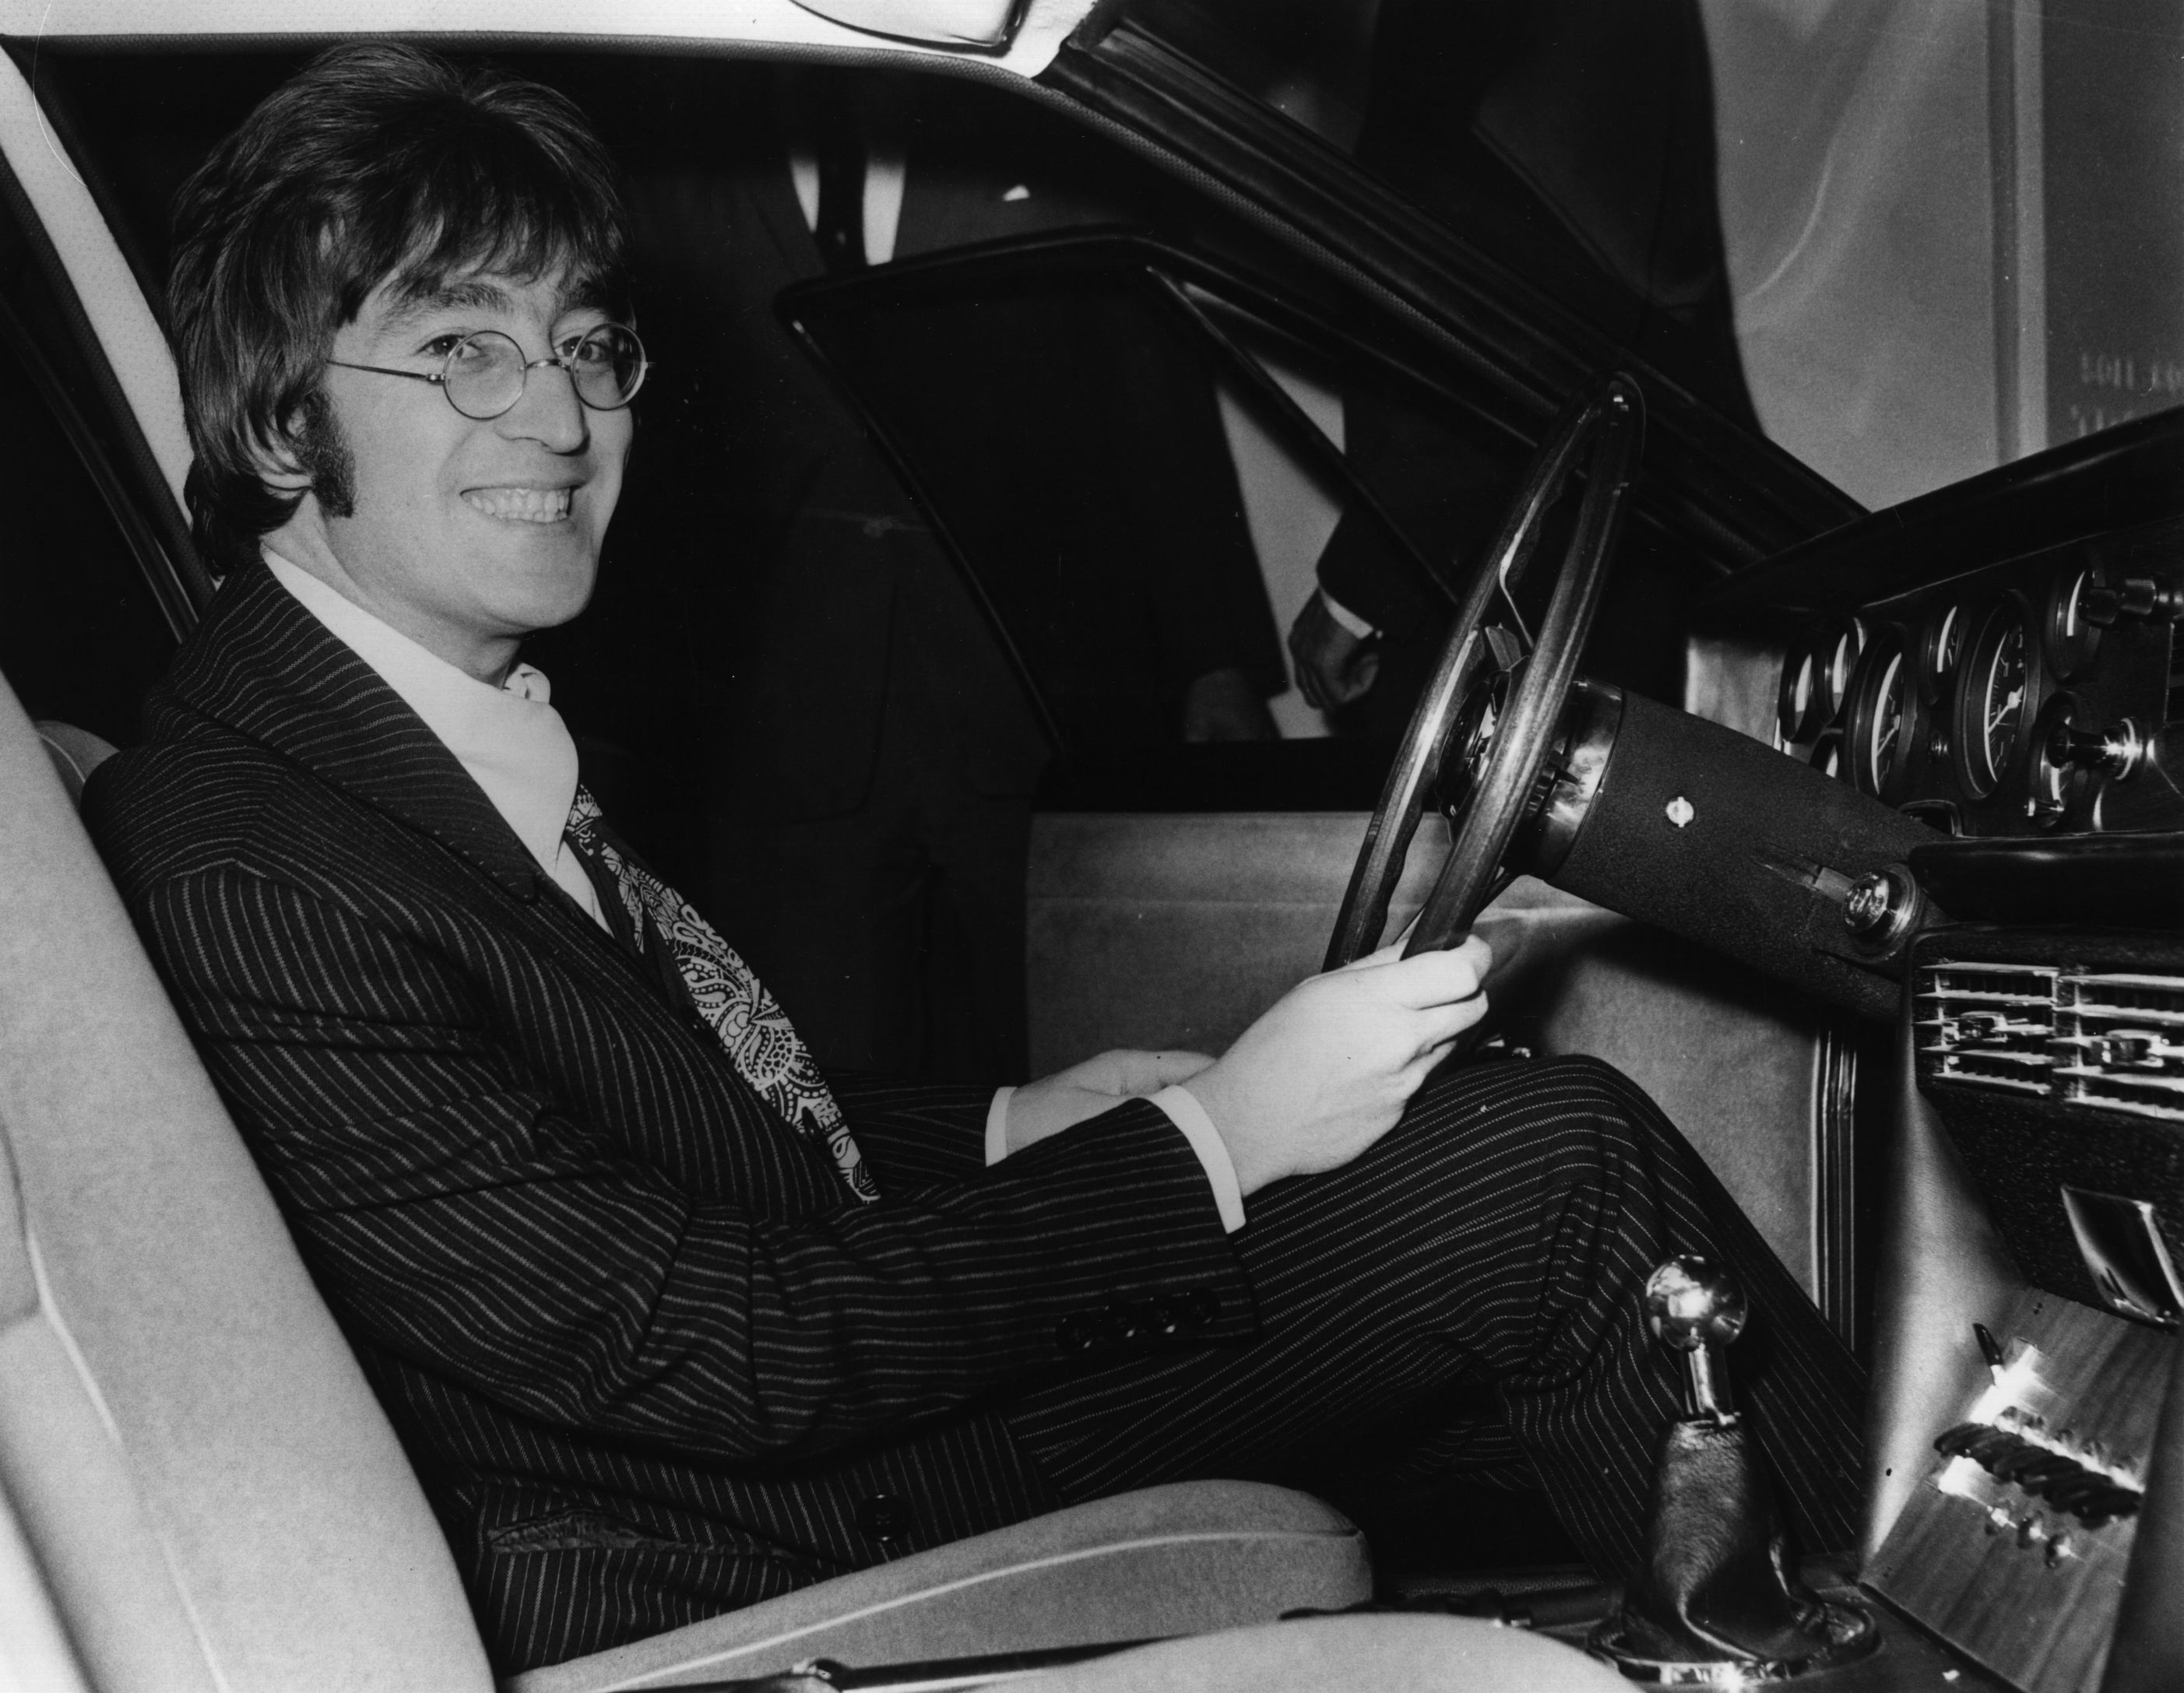 John Lennon siting in a car